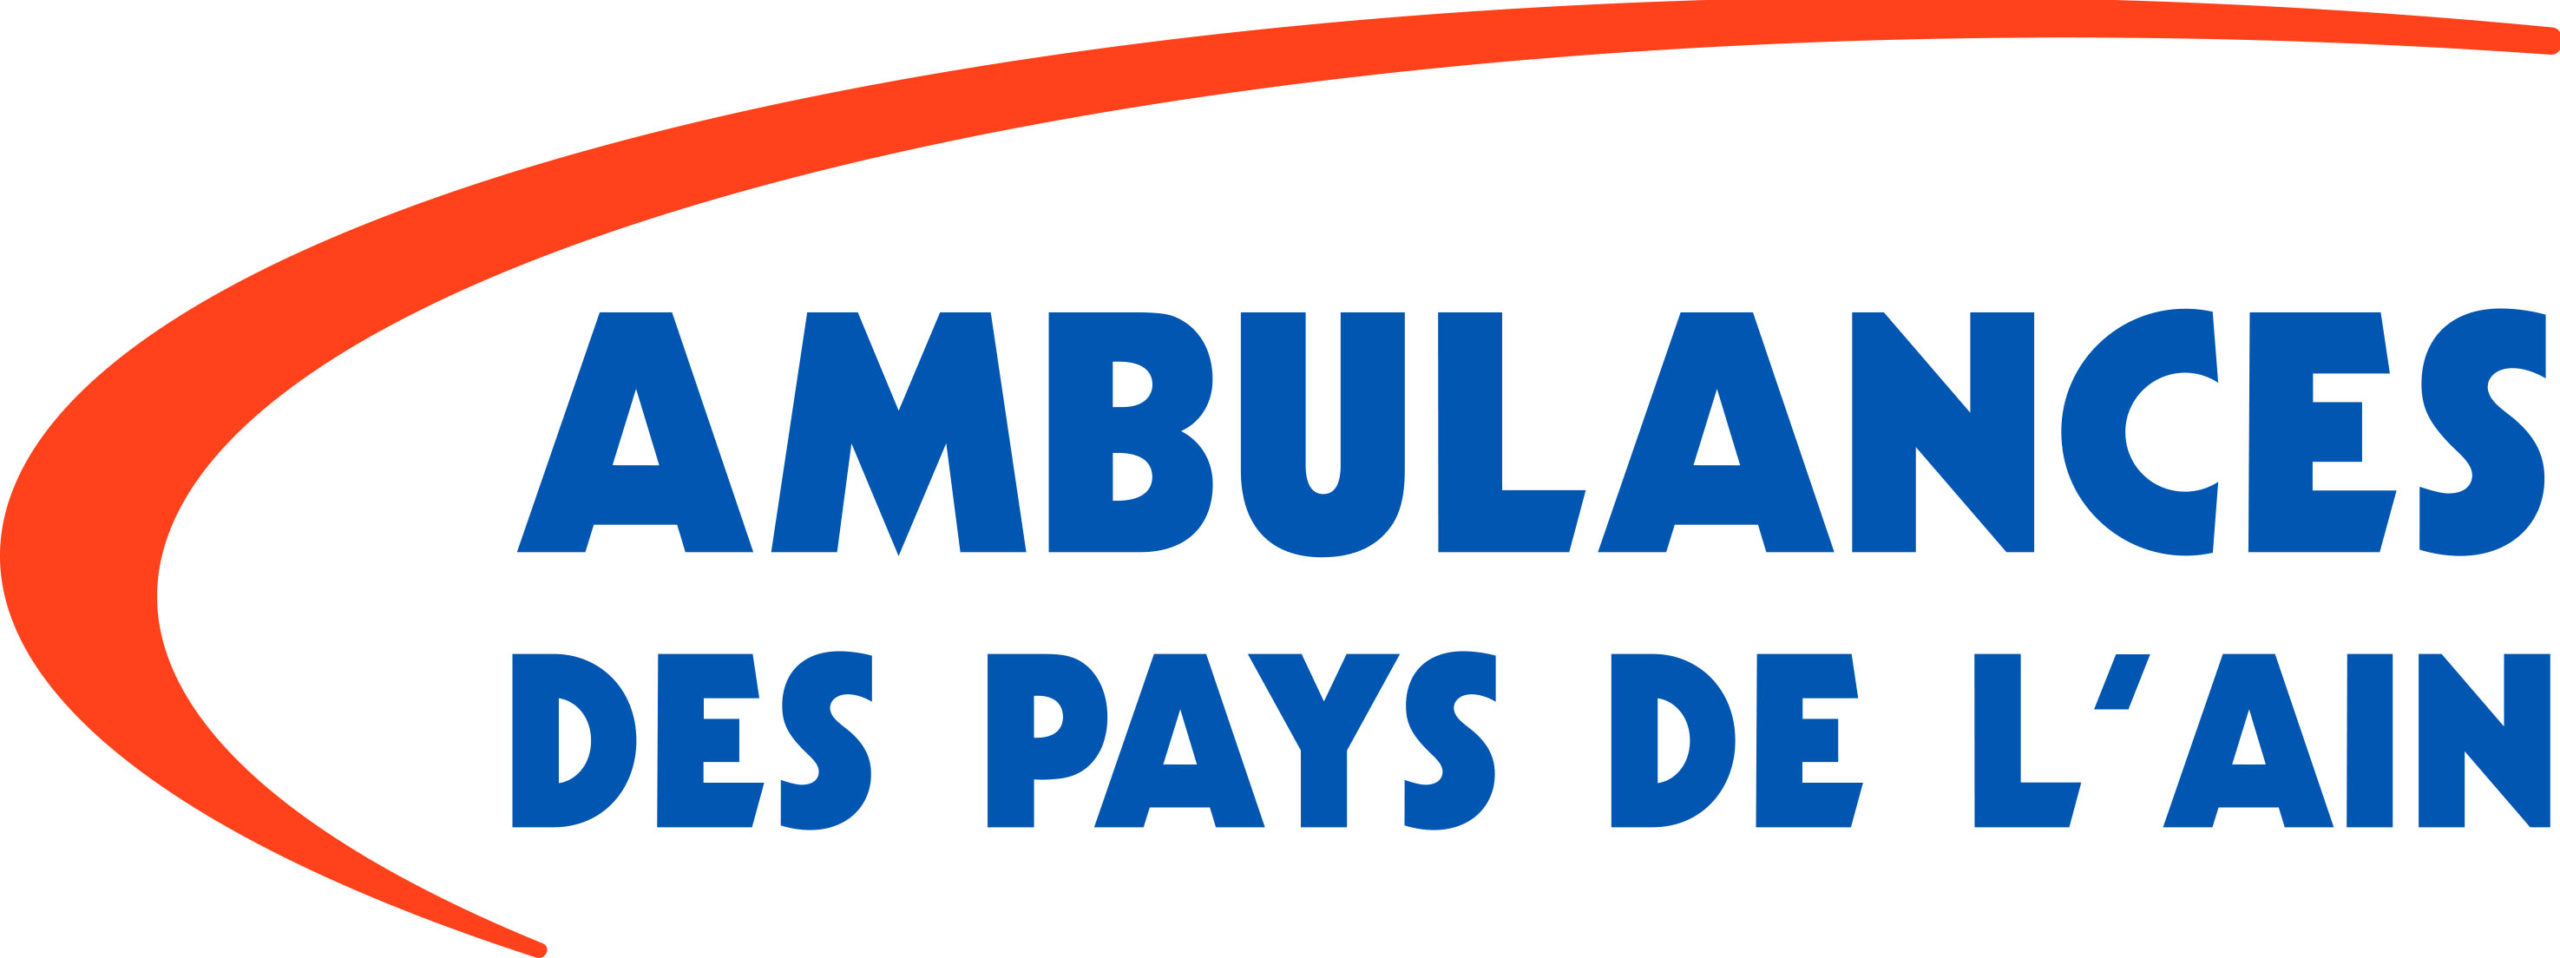 Ambulances des Pays de l'Ain logo